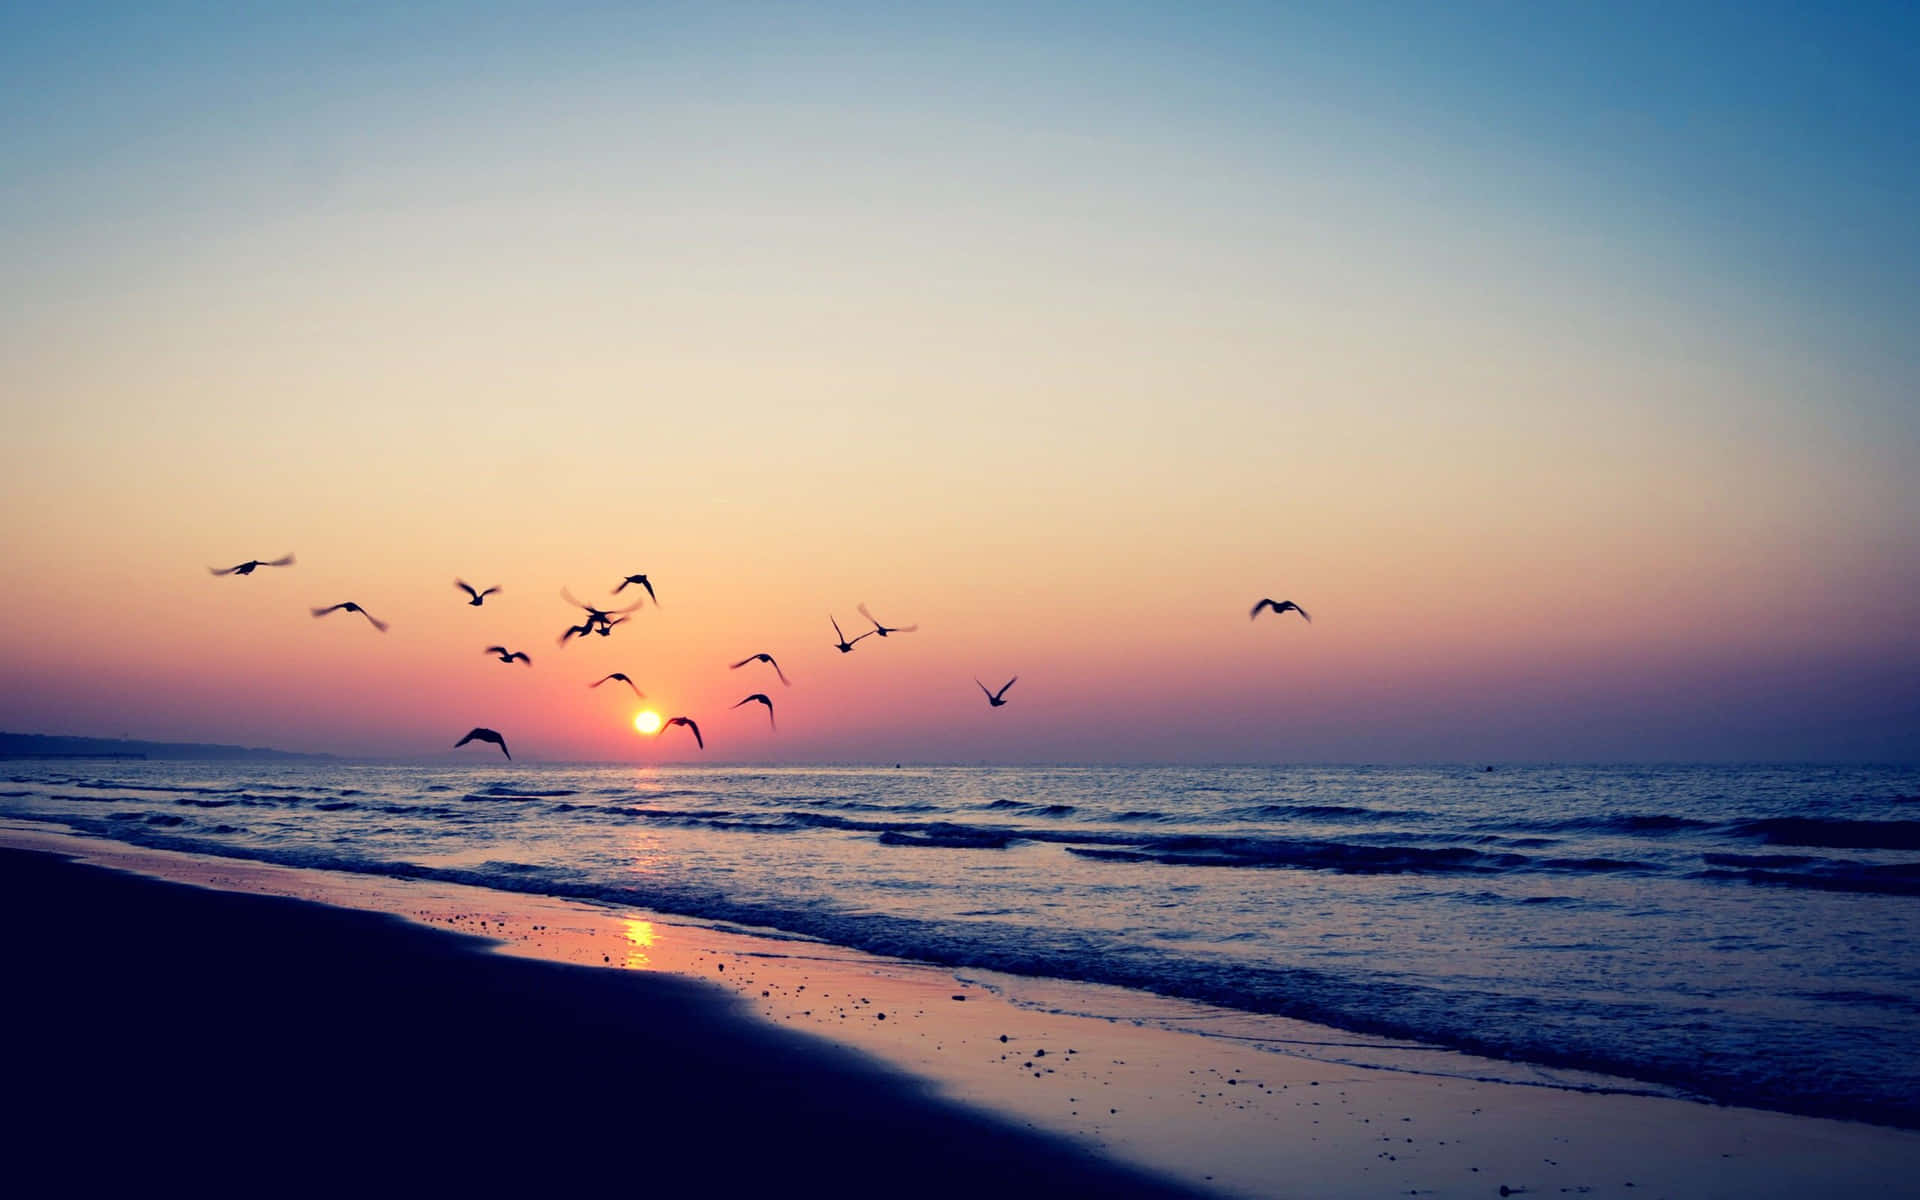 Pájarosvoladores En La Playa Con Un Aspecto Estético De Tumblr. Fondo de pantalla